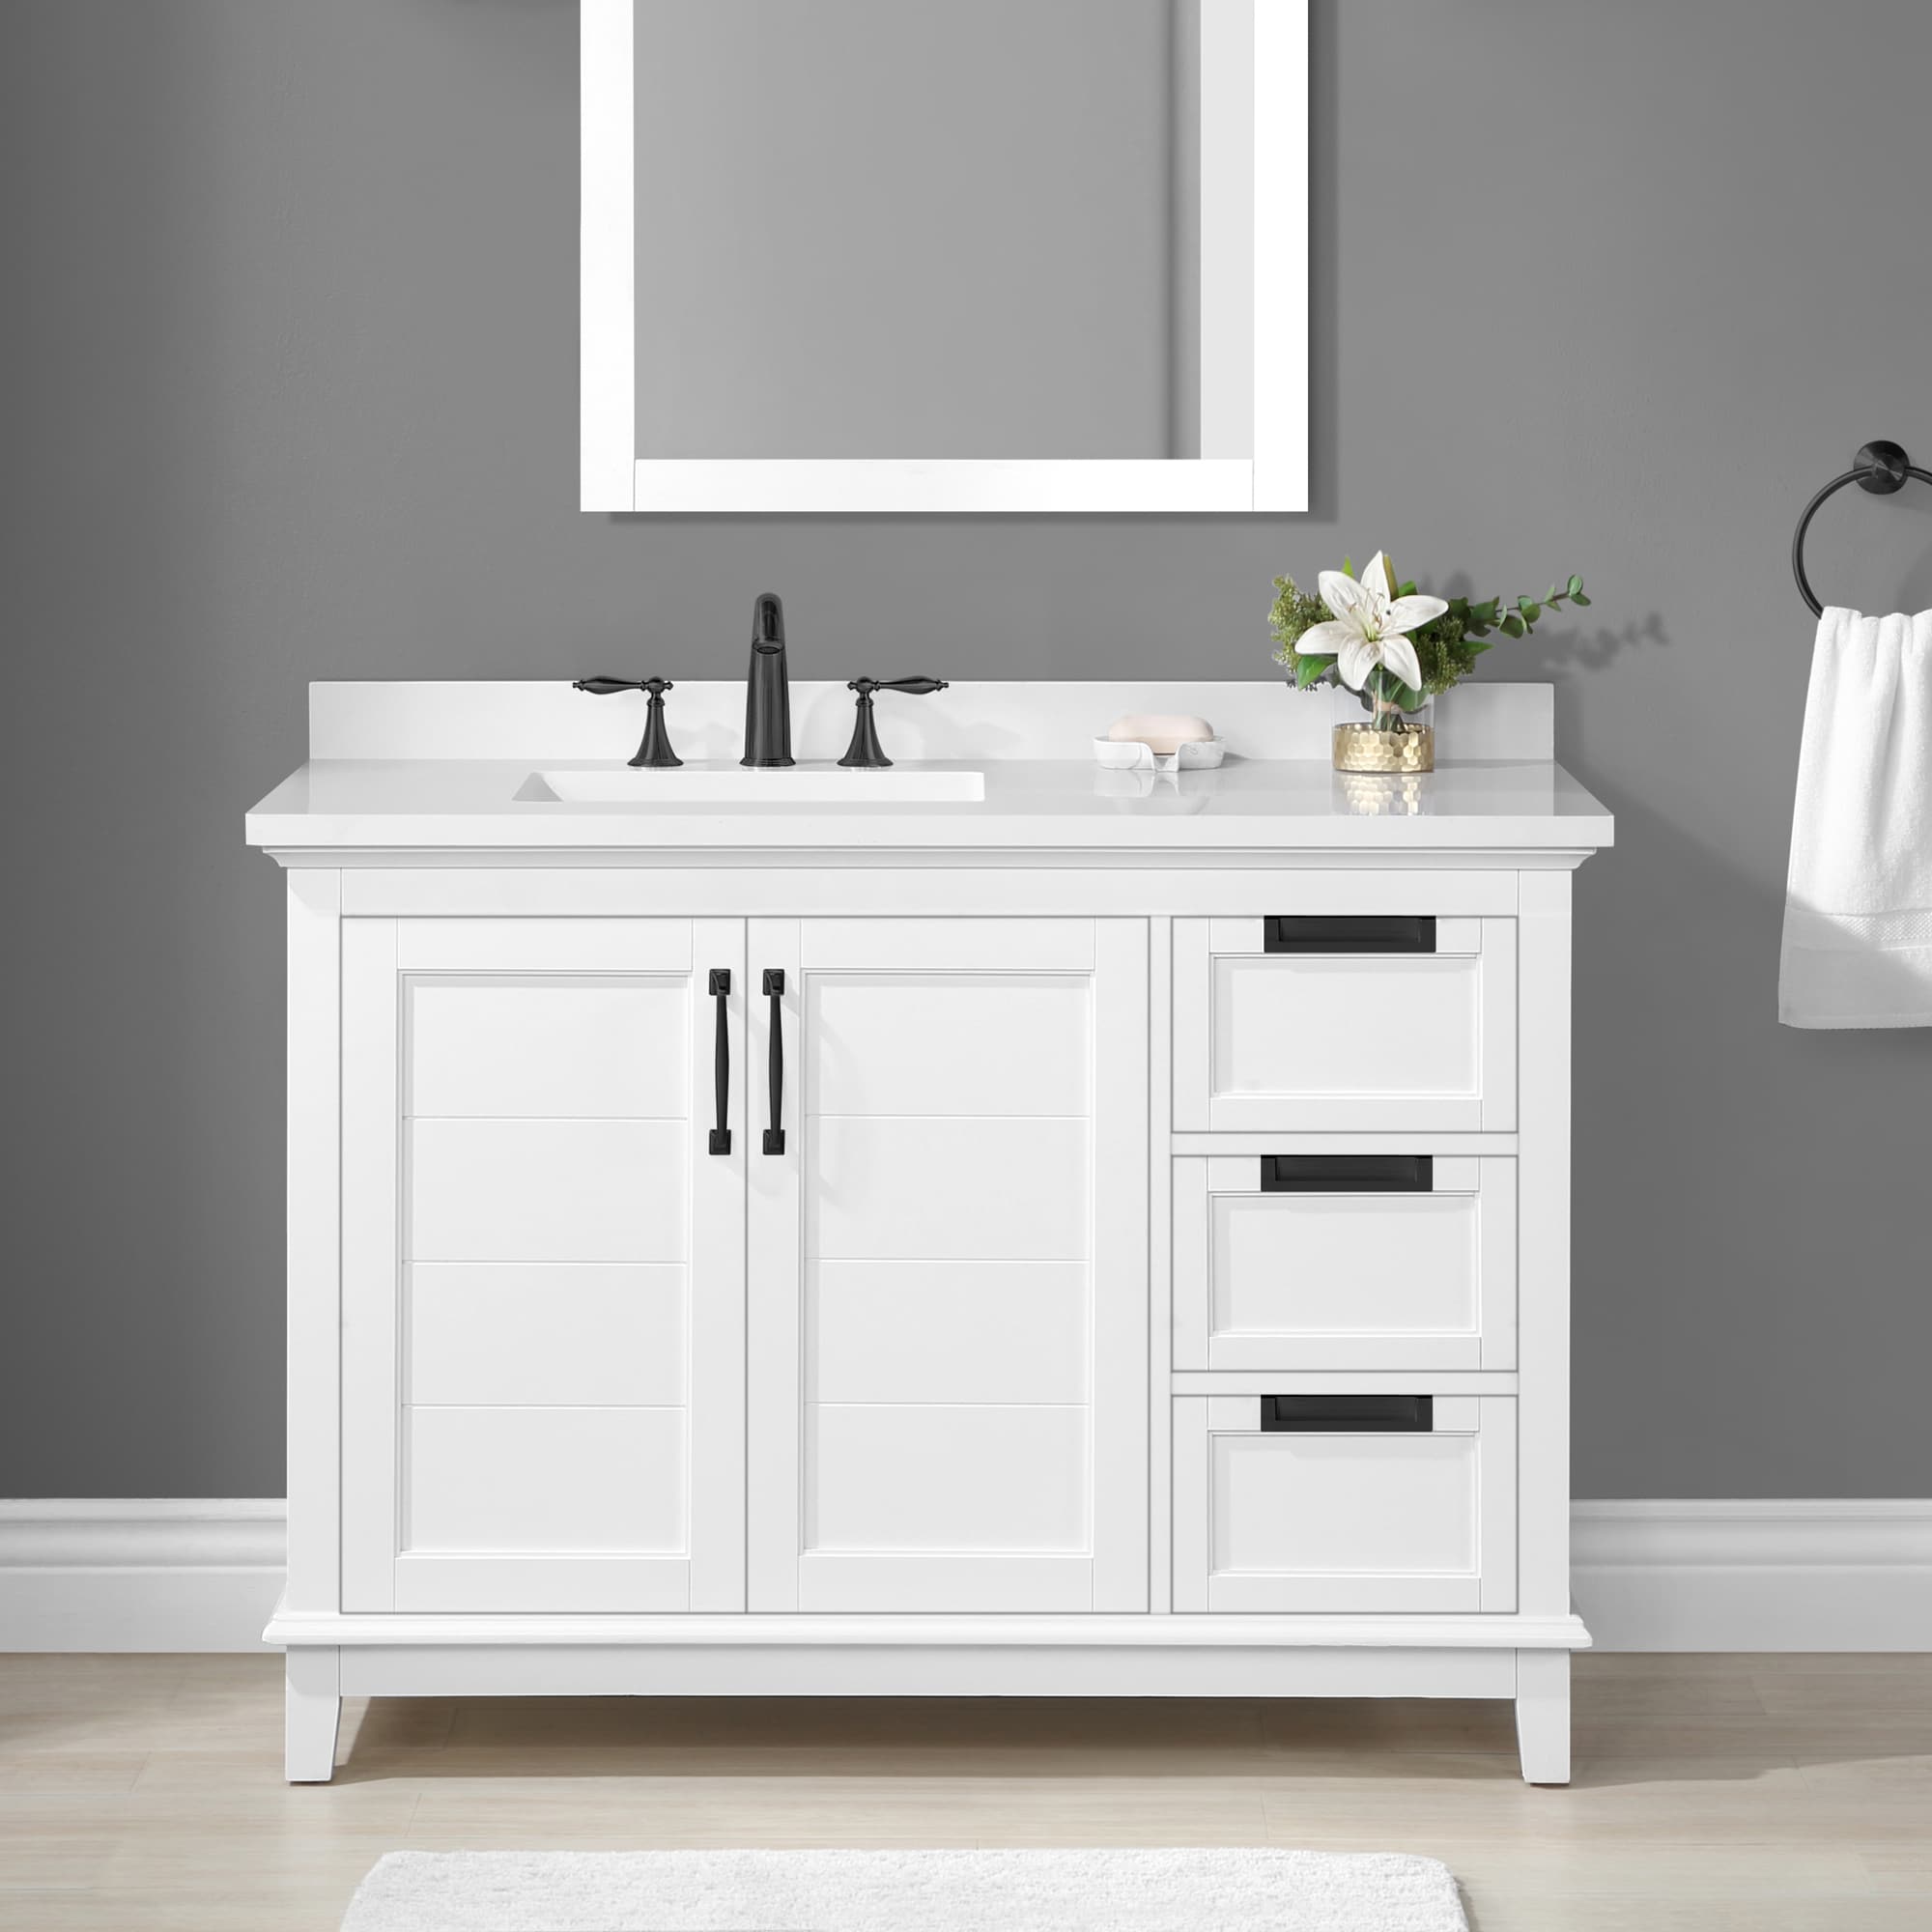 allen + roth Clarita 5-in White Undermount Single Sink Bathroom